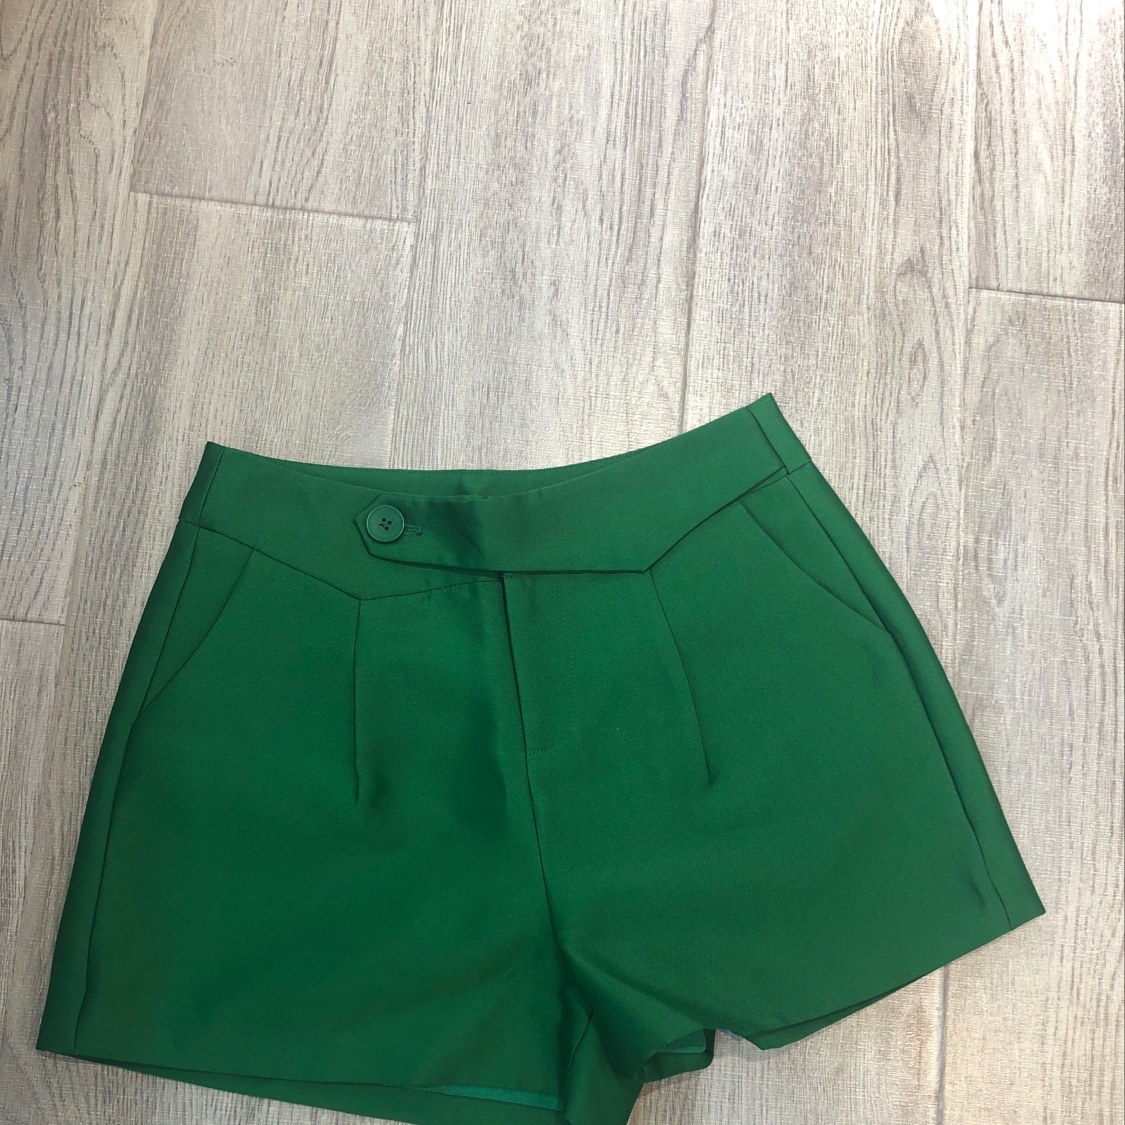 绿色短裤详情图1